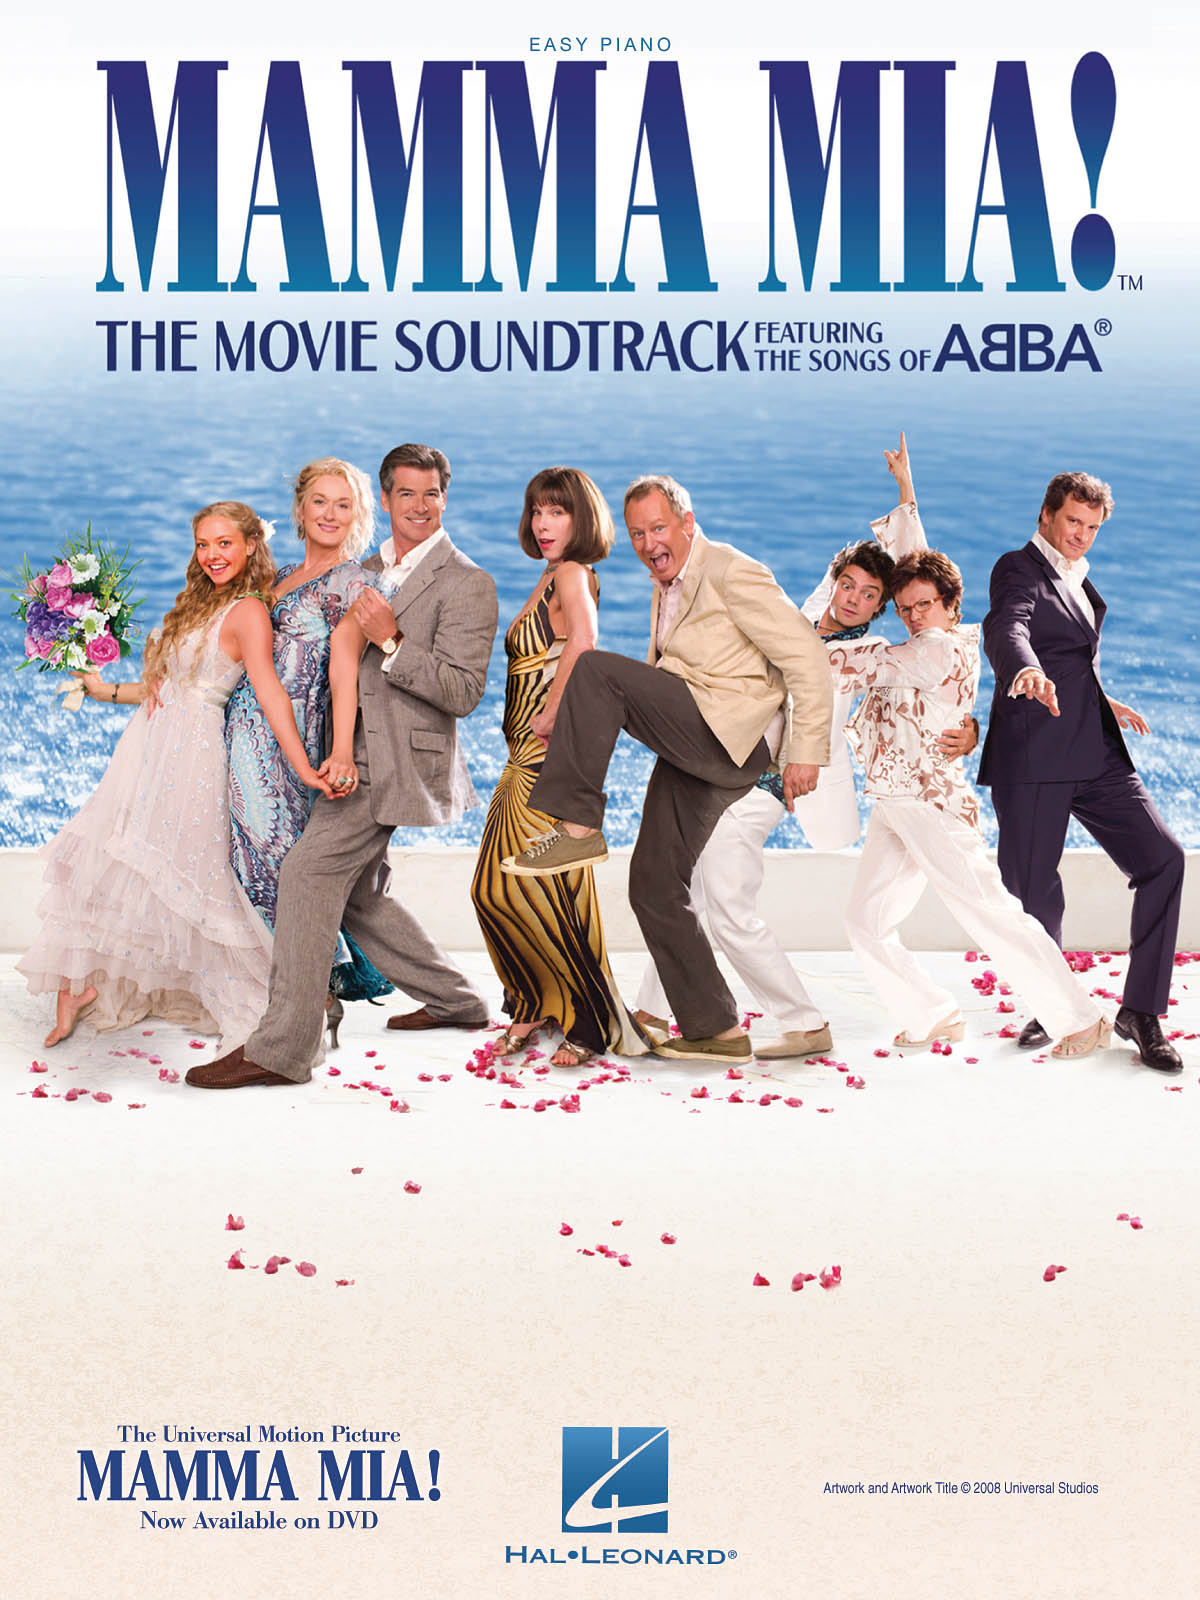 Mamma Mia (abba) The Movie Soundtrack Easy Piano Sheet Music Songbook